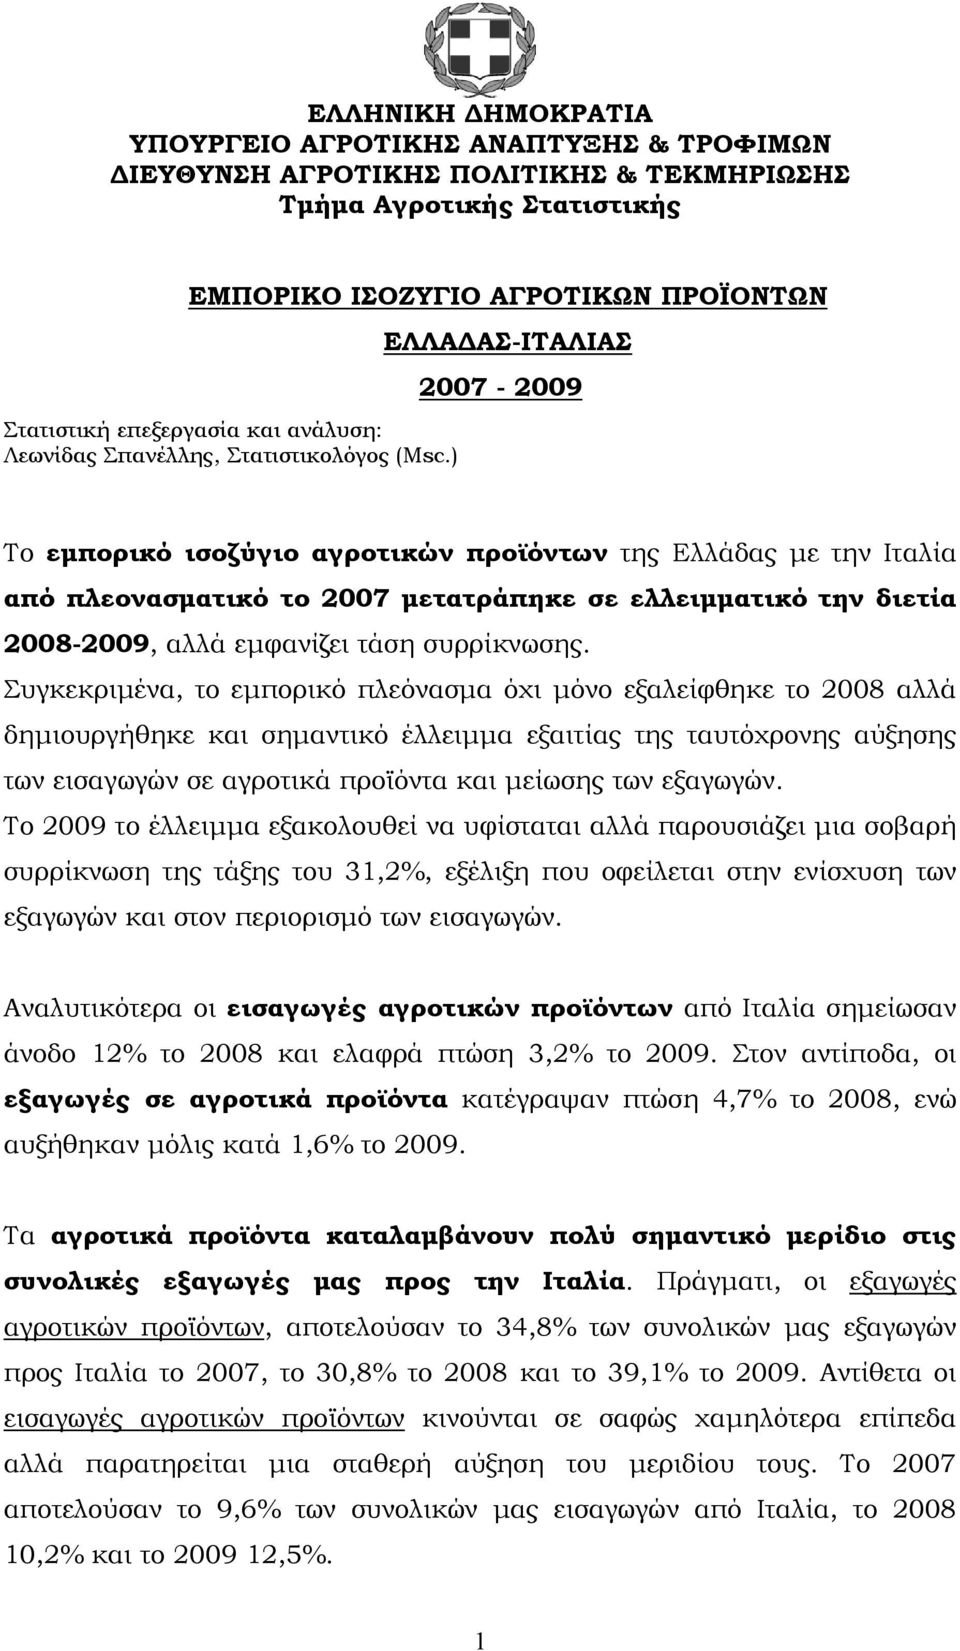 ) ΕΛΛΑΔΑΣ-ΙΤΑΛΙΑΣ 2007-2009 Το εμπορικό ισοζύγιο αγροτικών προϊόντων της Ελλάδας με την Ιταλία από πλεονασματικό το 2007 μετατράπηκε σε ελλειμματικό την διετία 2008-2009, αλλά εμφανίζει τάση